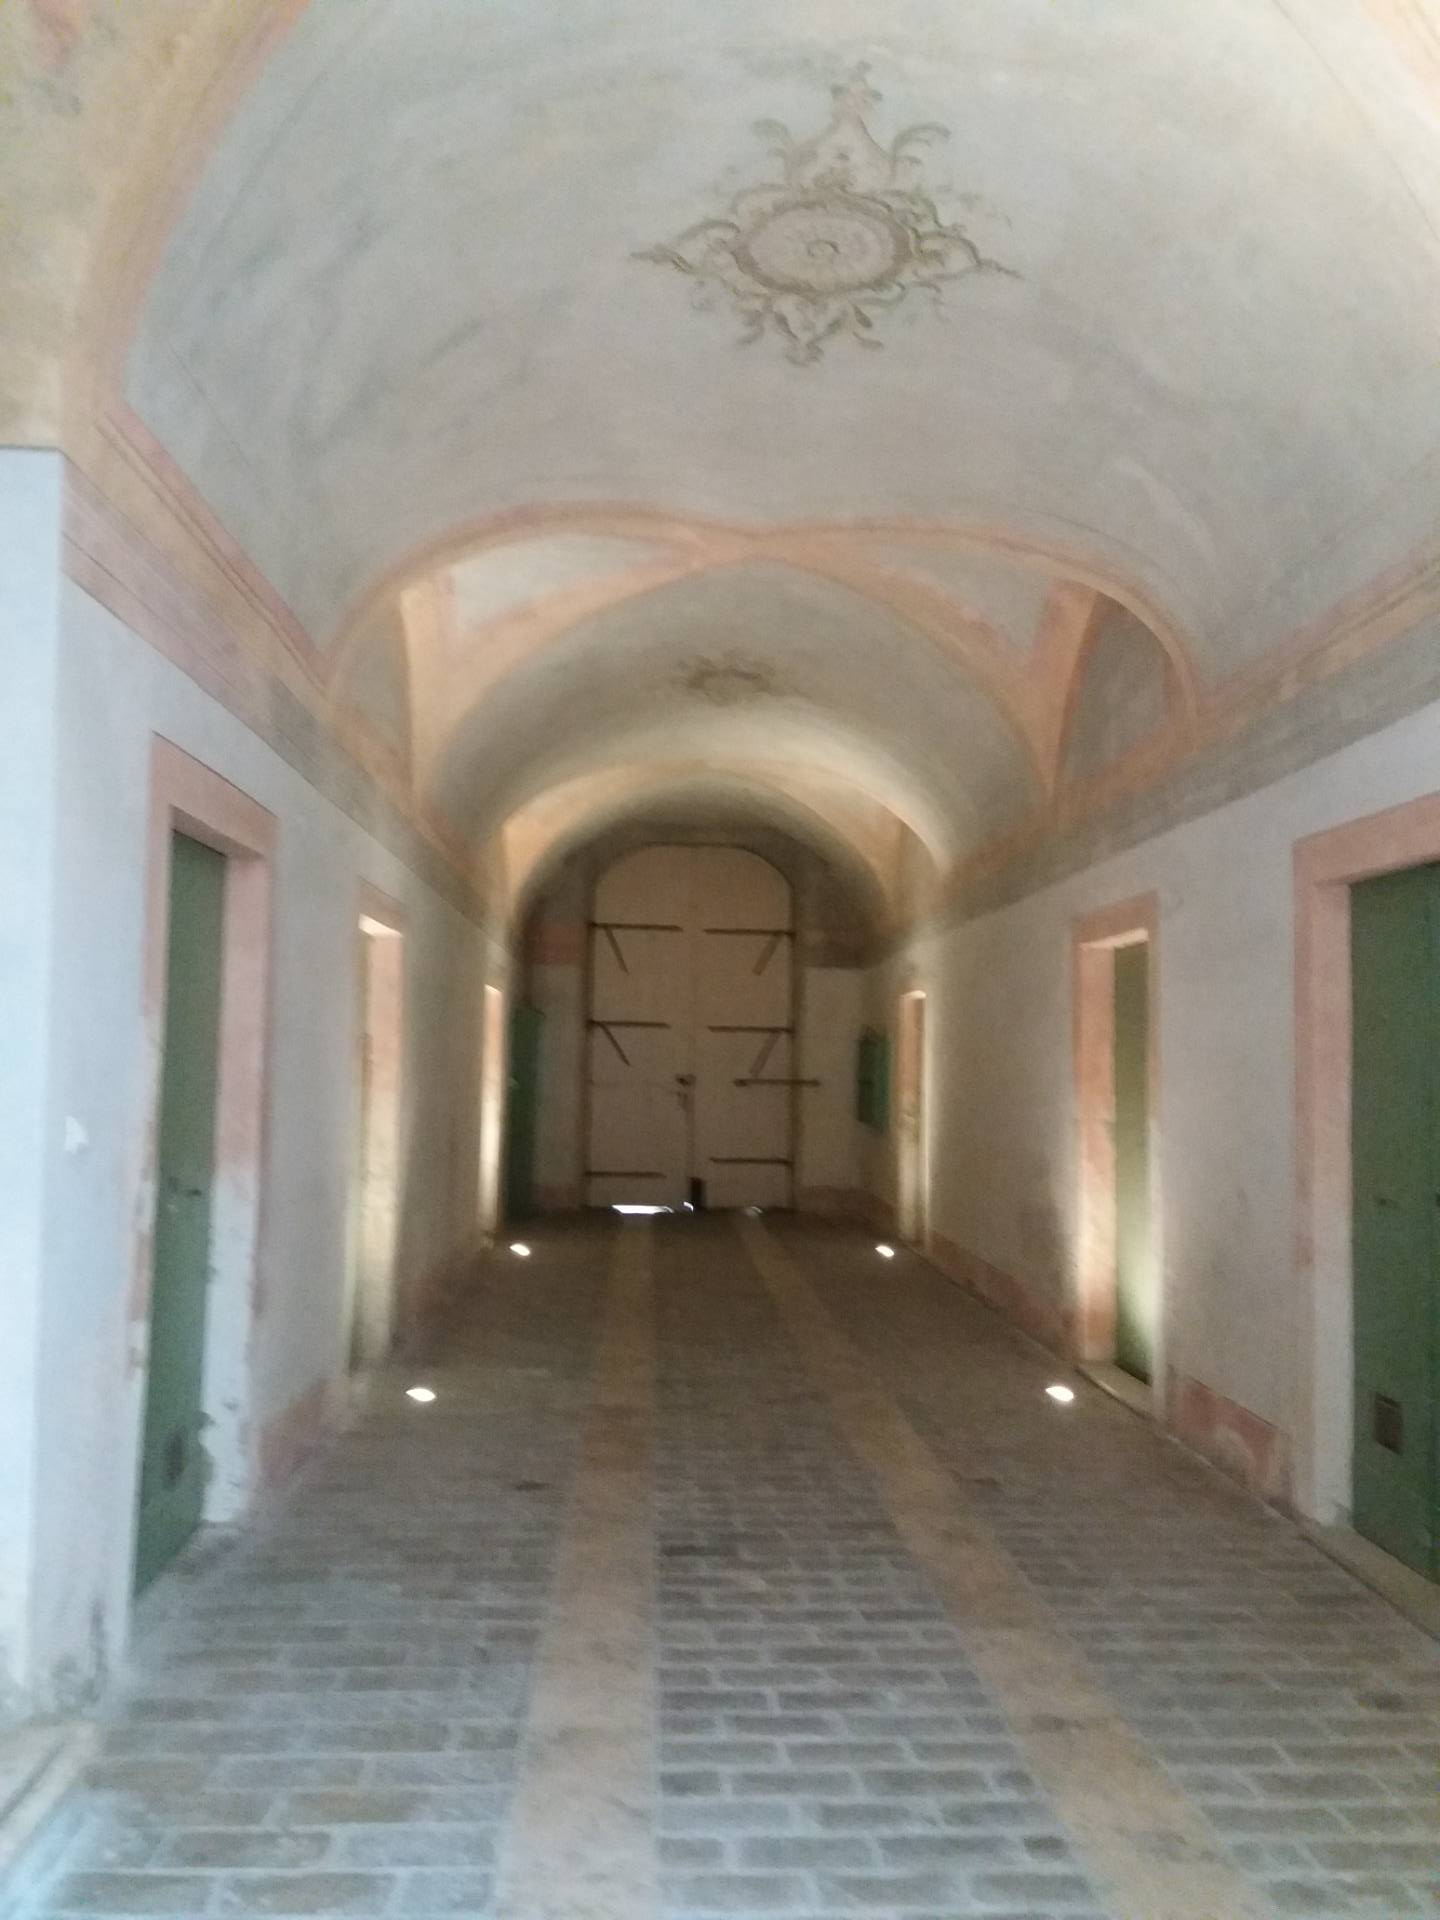 Appartamento in vendita, Ascoli Piceno centro storico